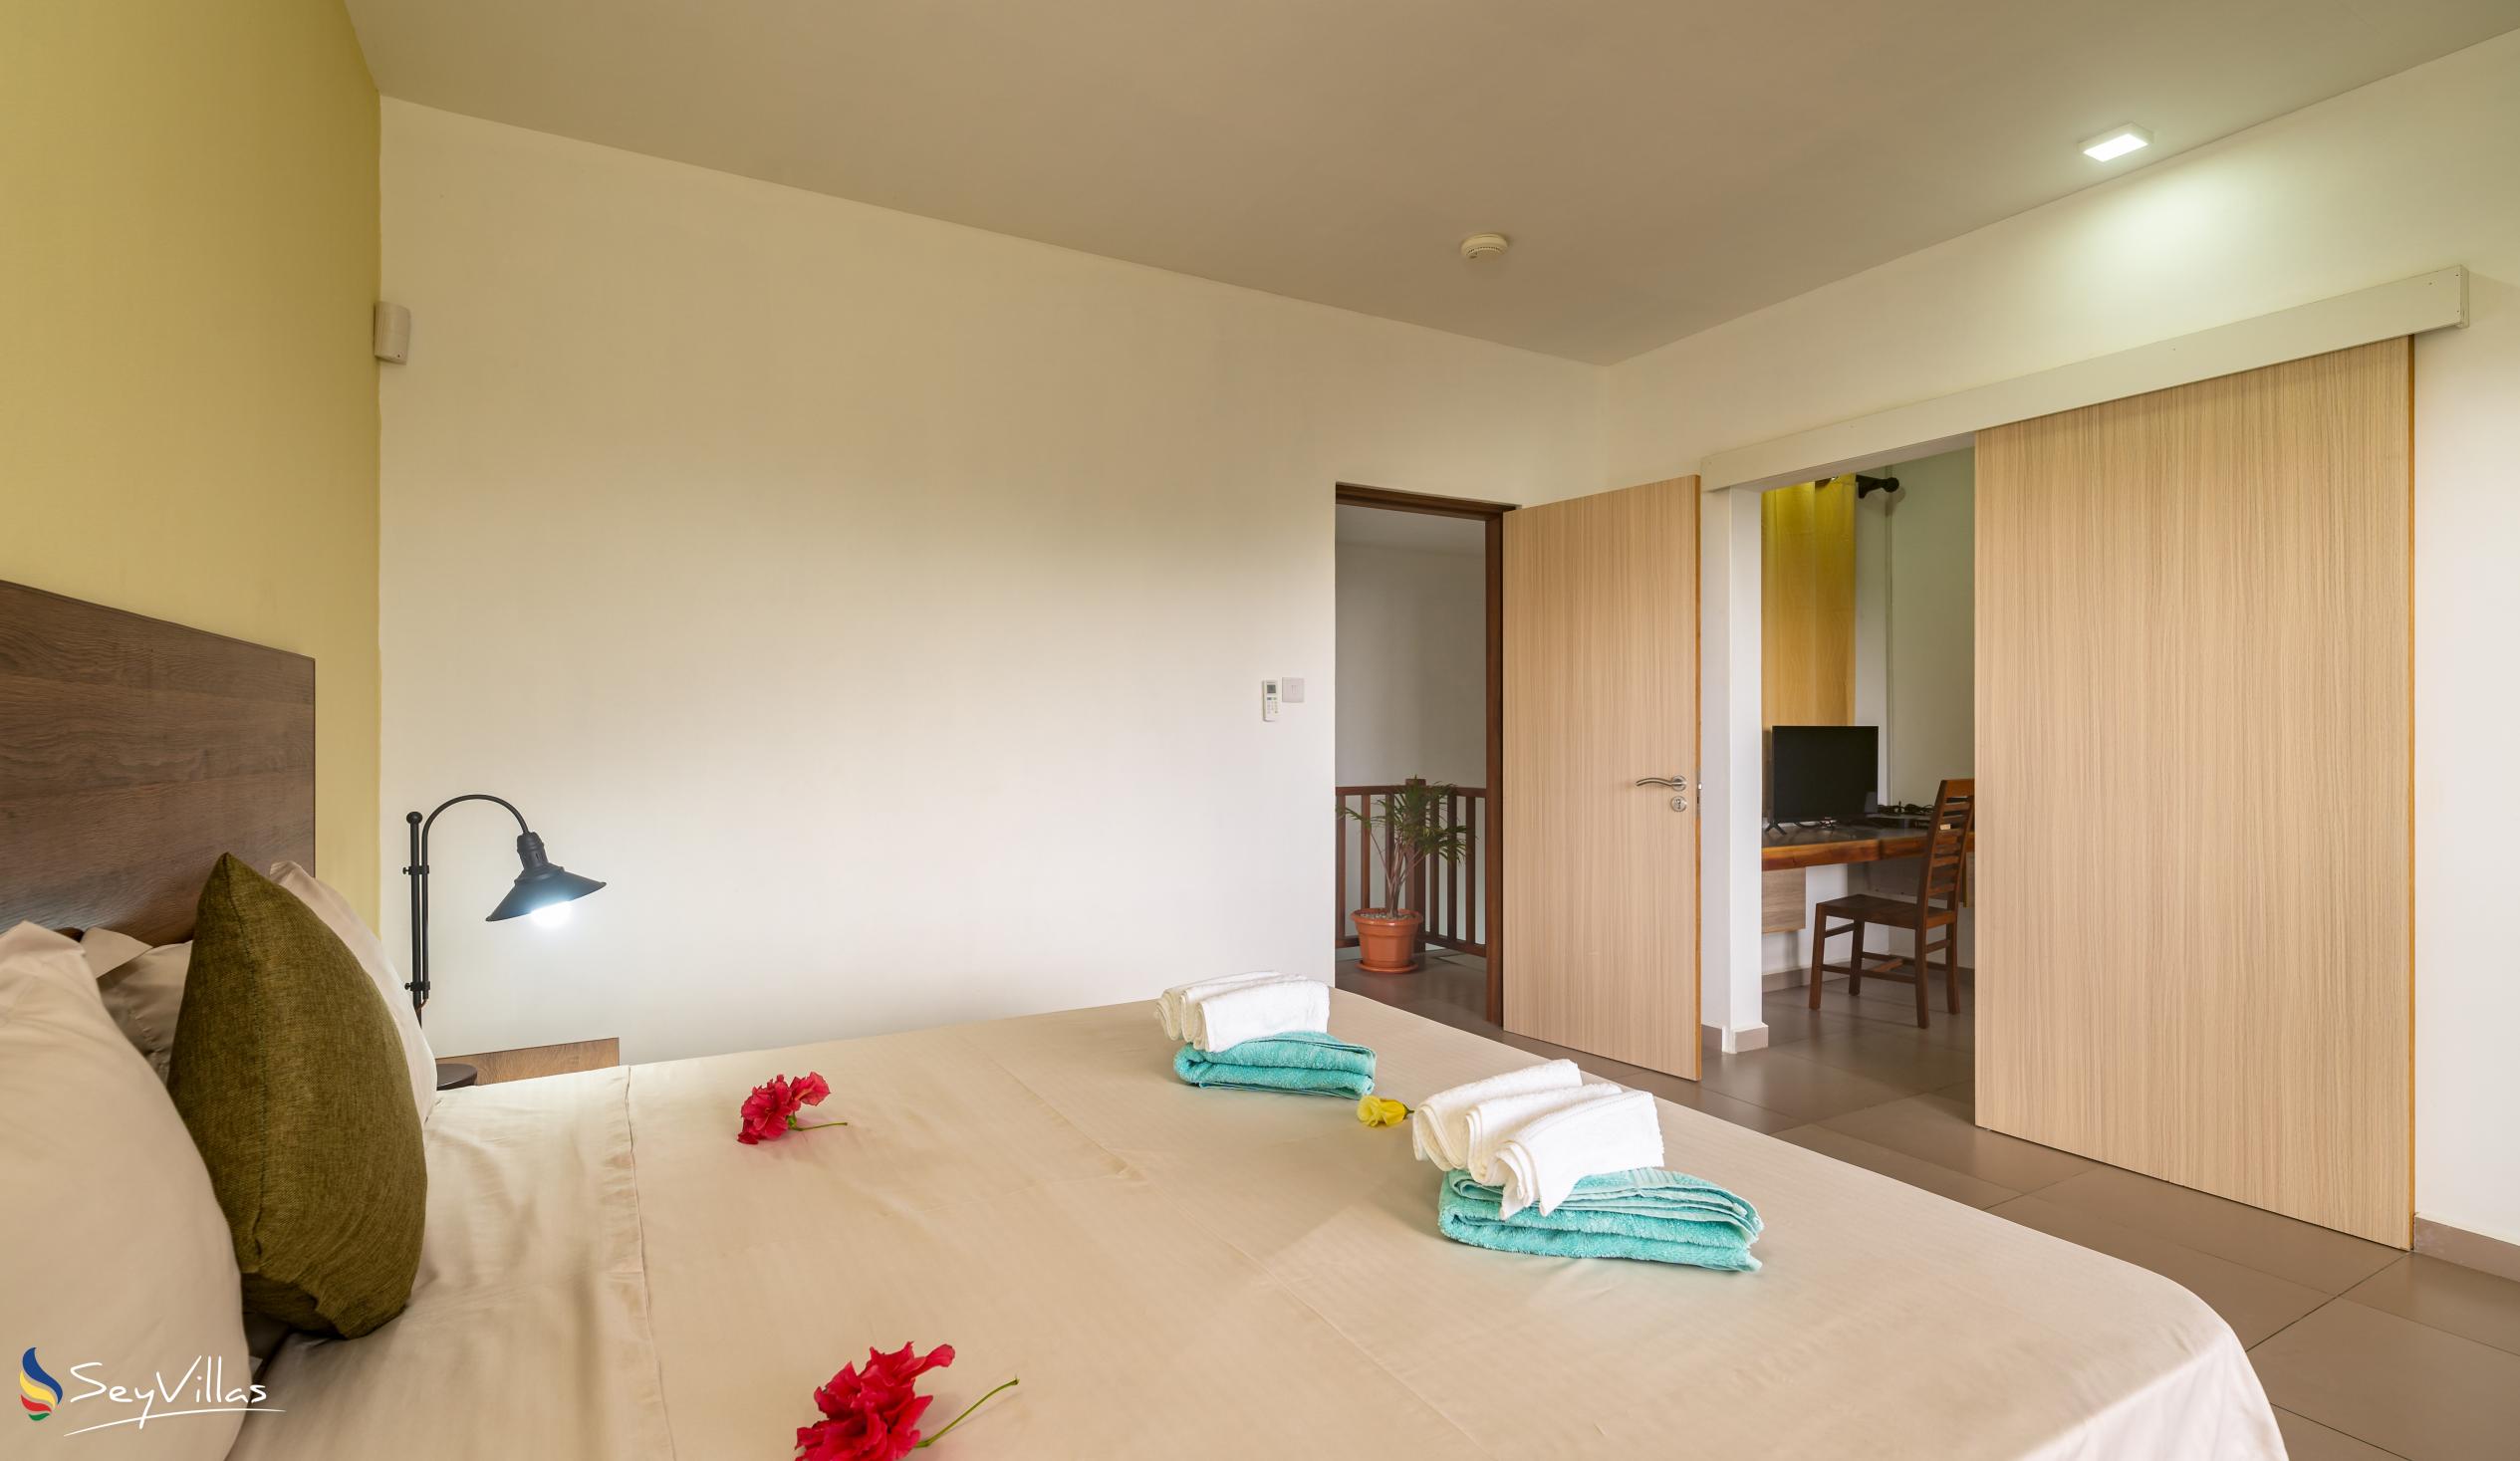 Foto 44: Maison Dora - Villa mit 2 Schlafzimmern - Mahé (Seychellen)